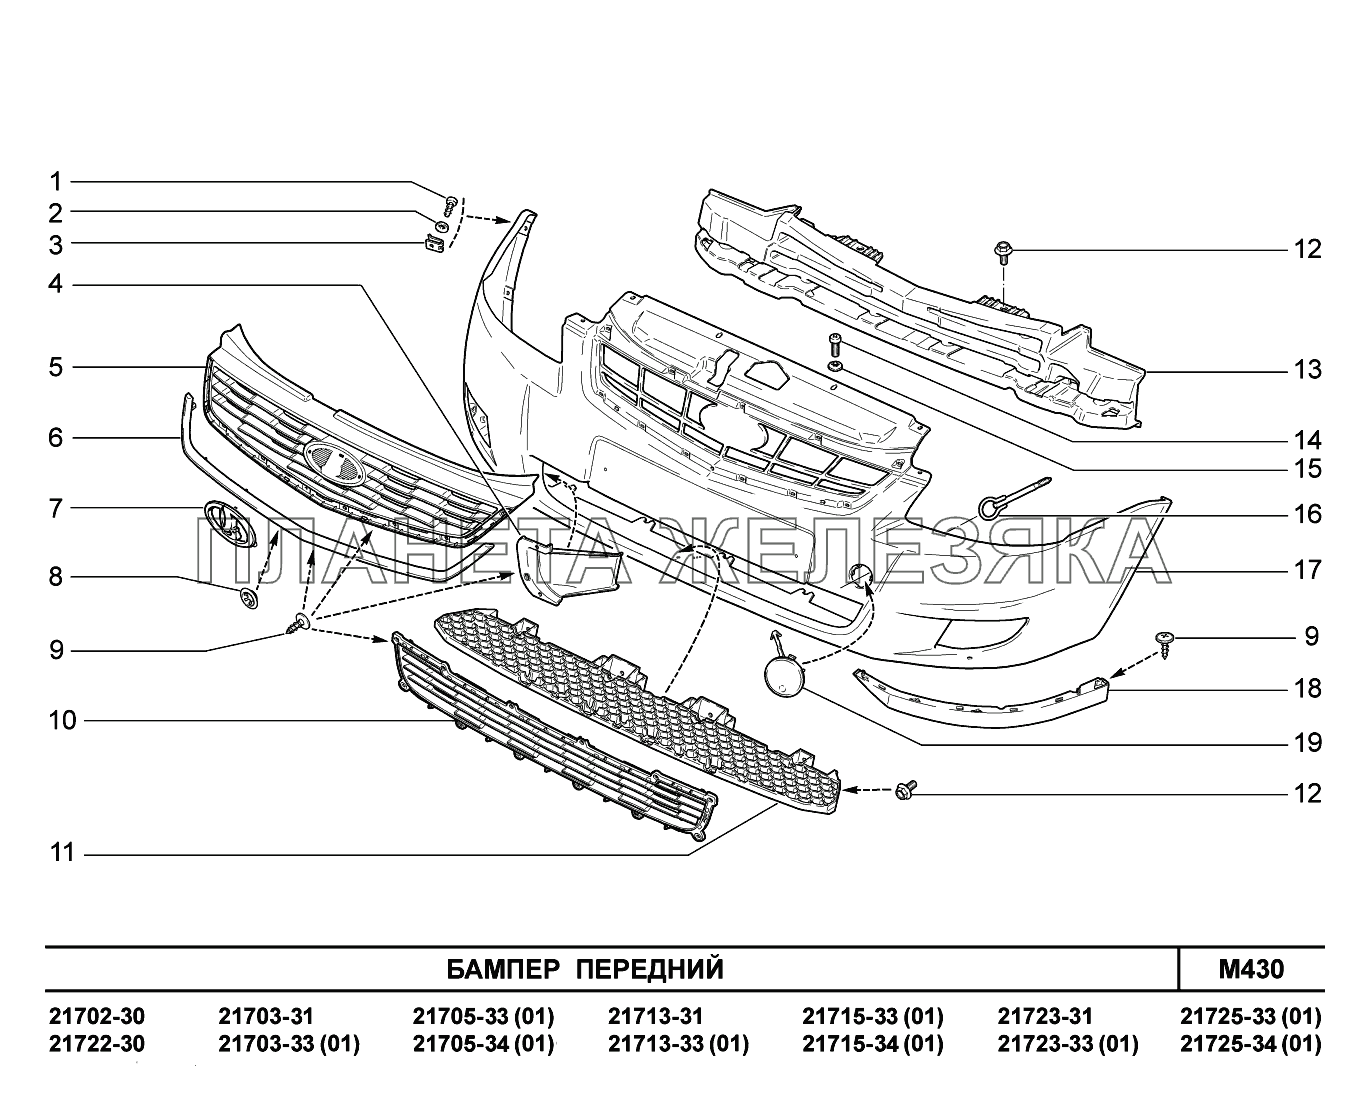 M430. Бампер  передний ВАЗ-2170 